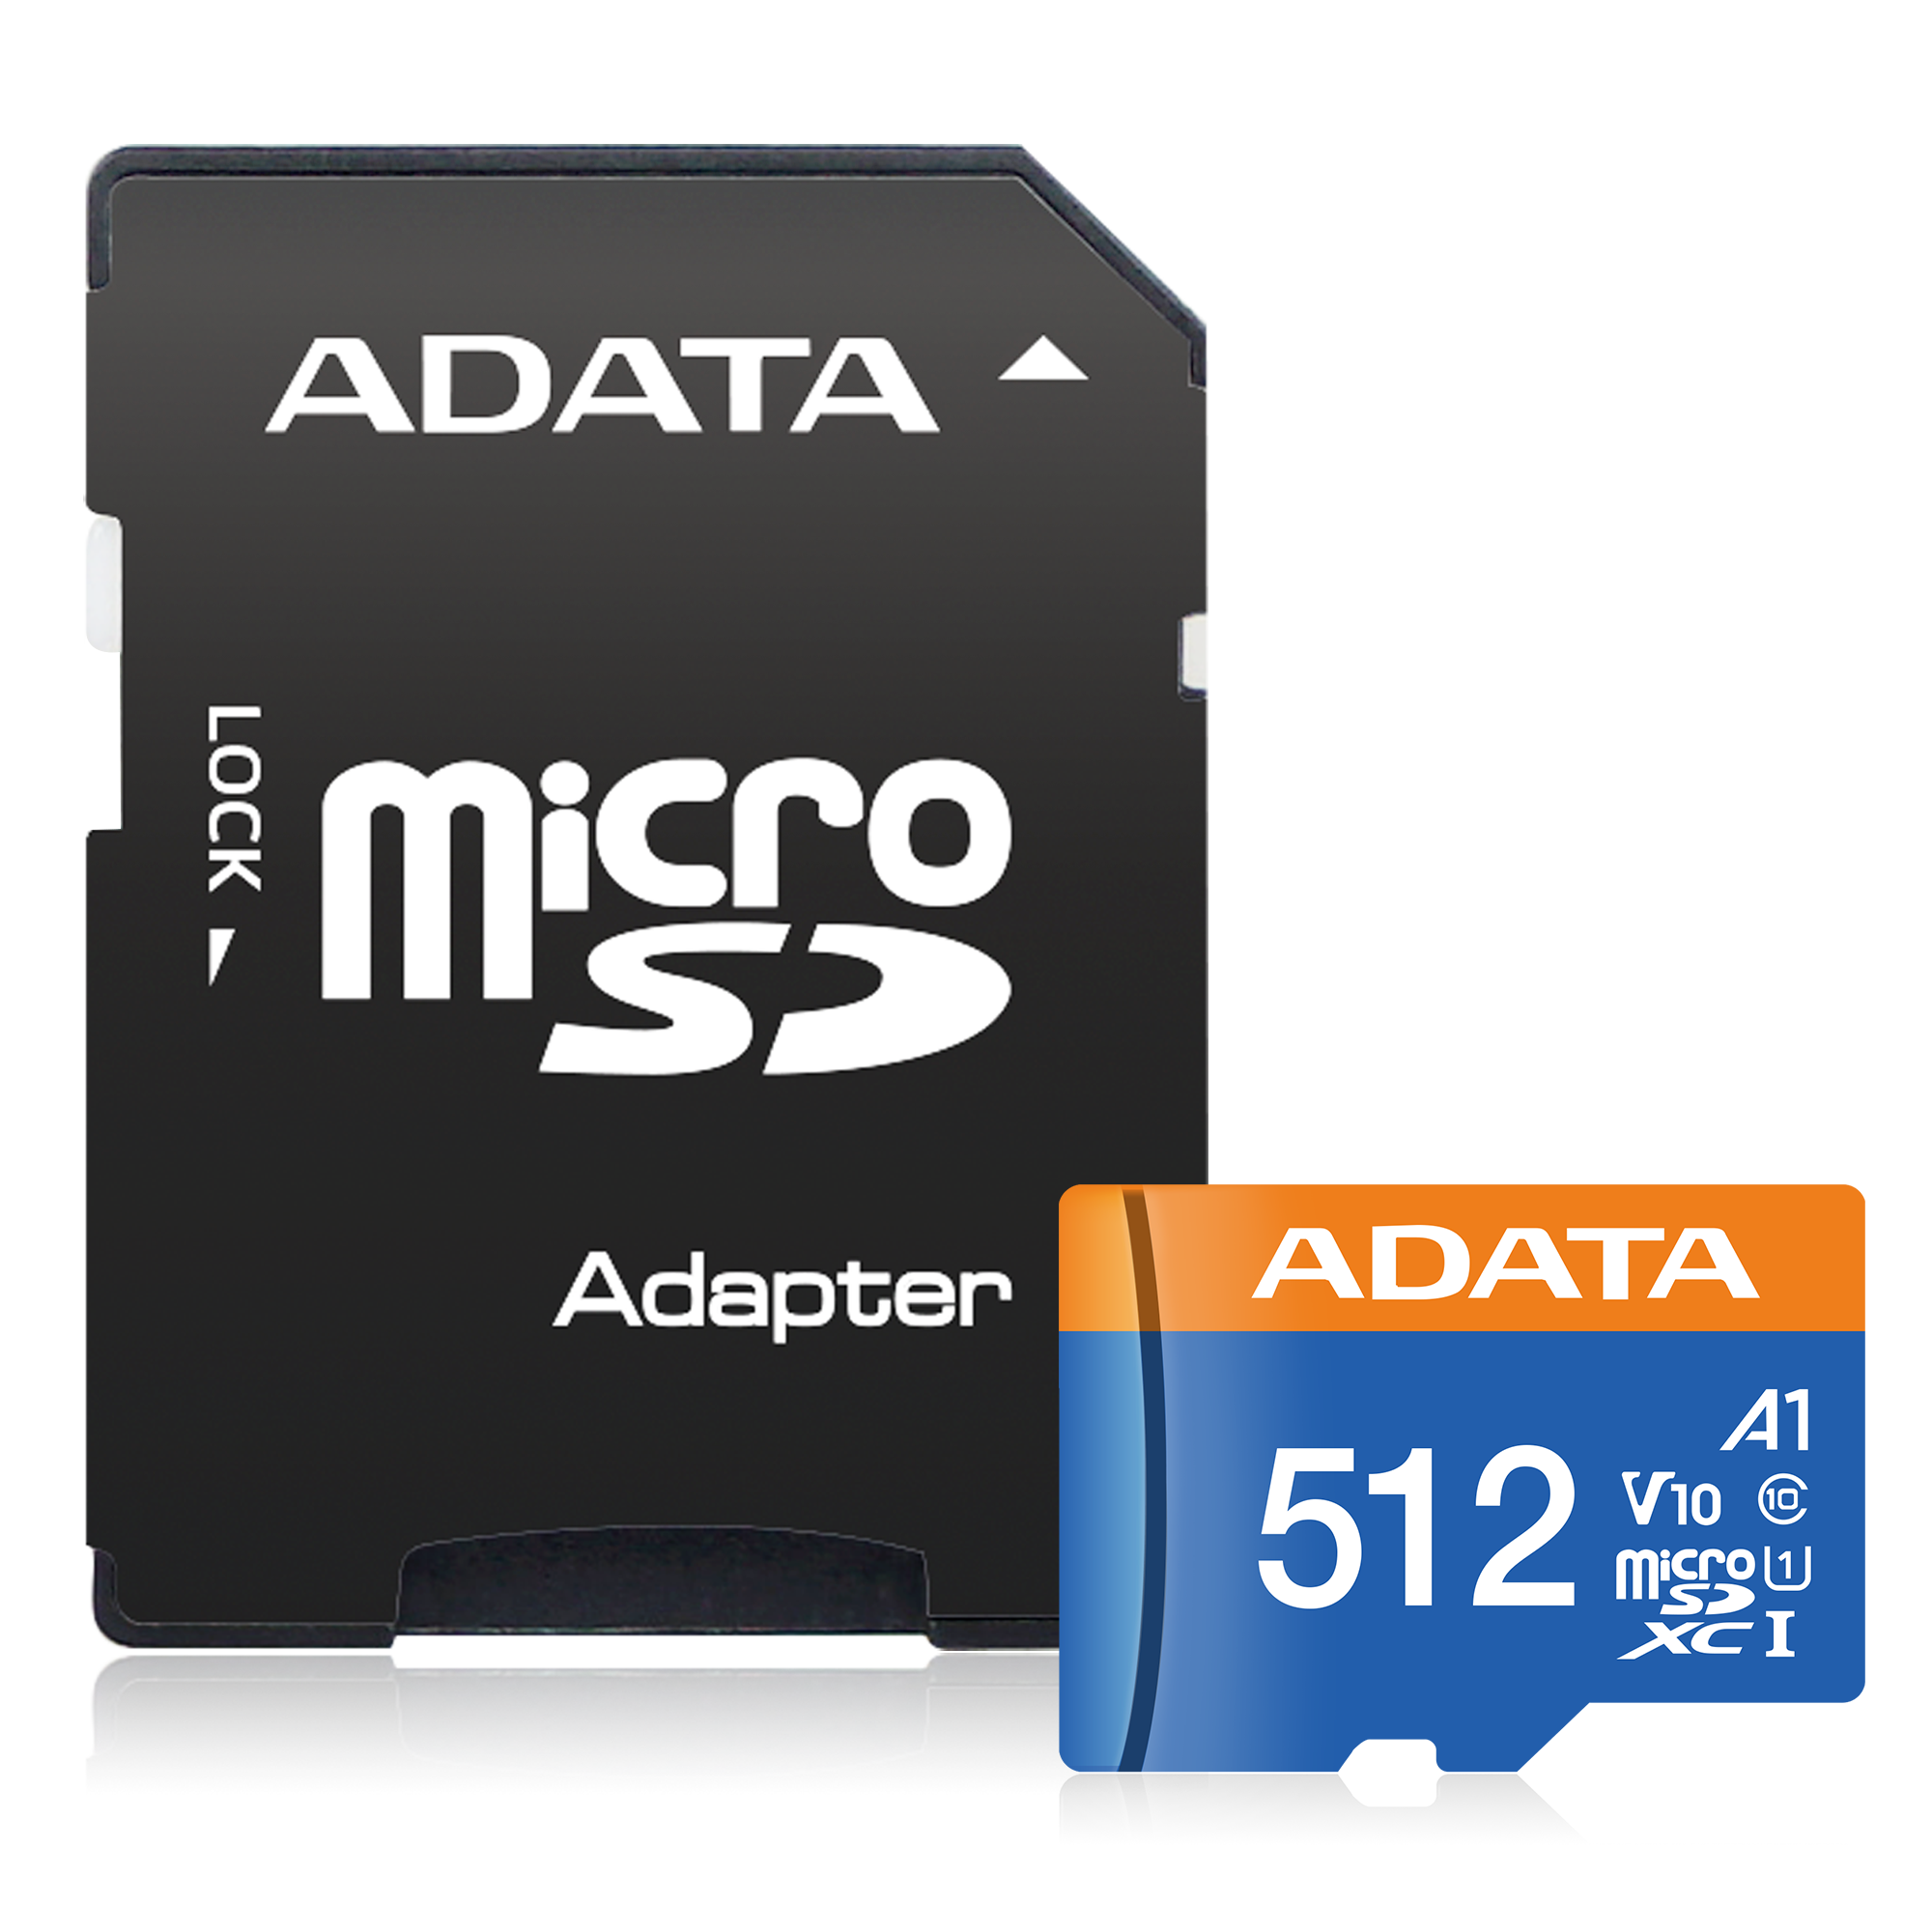 Tarjeta Micro SDXC UHS-I de 64GB Tarjeta de memoria flash Micro SD